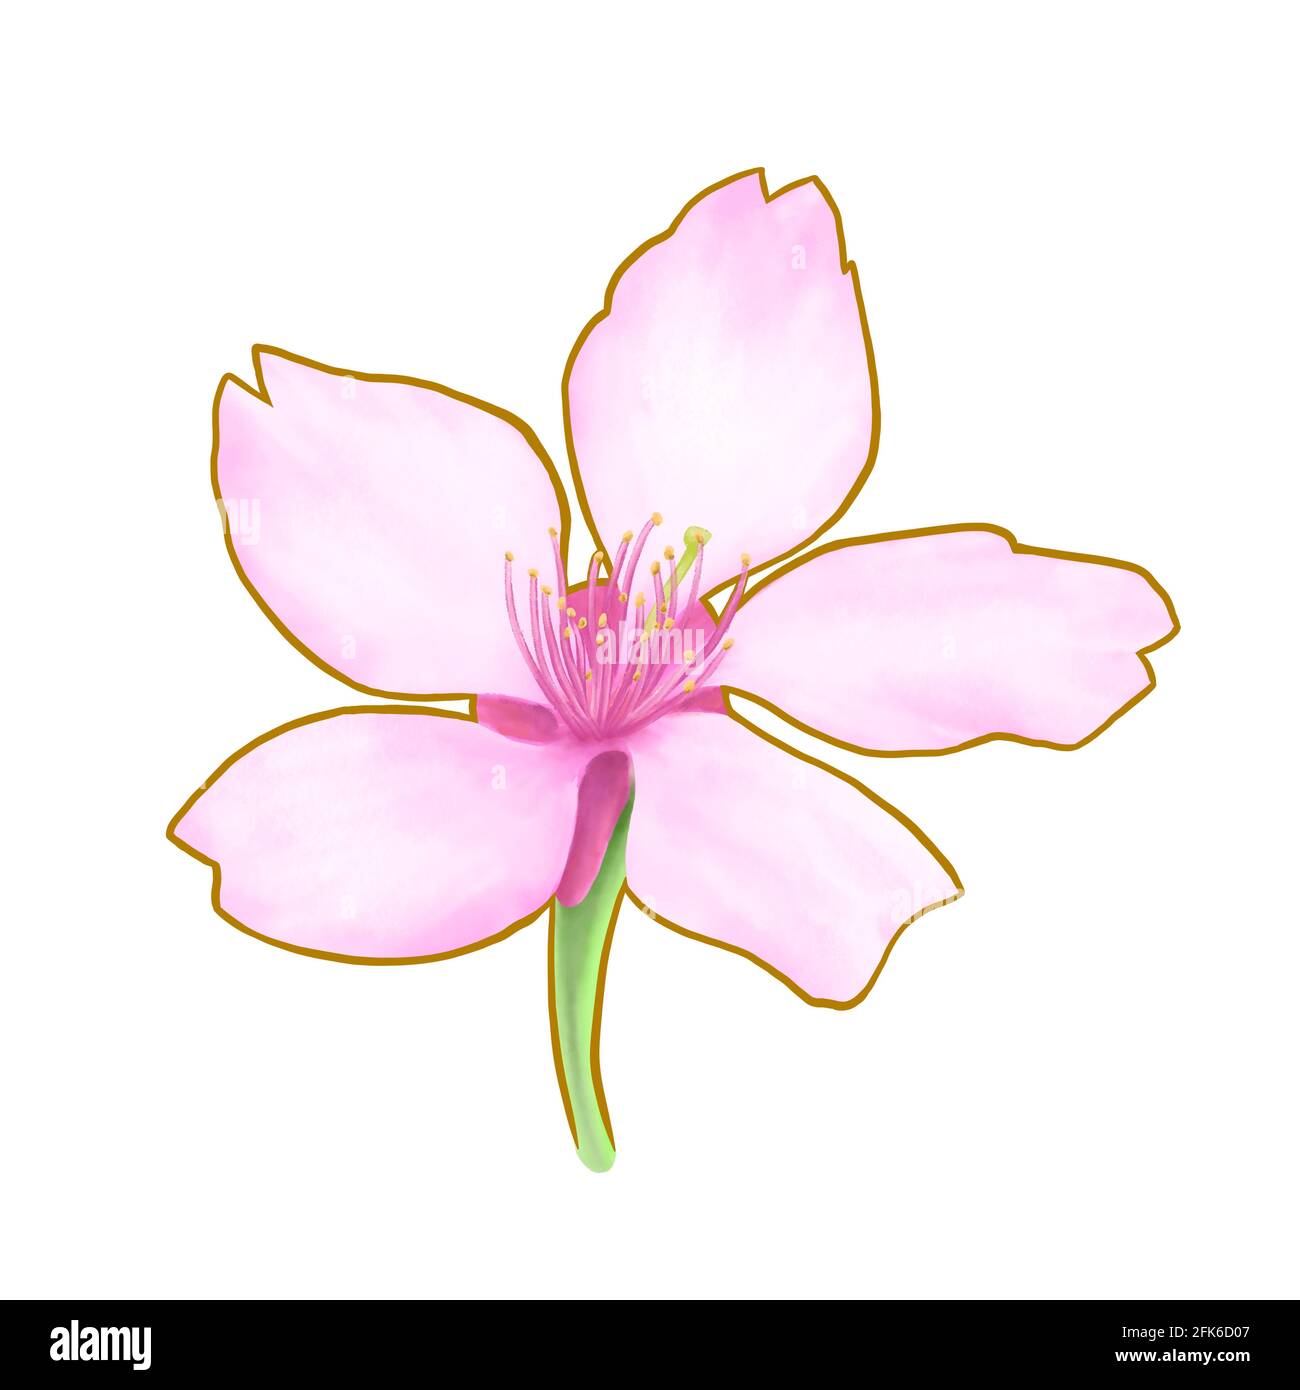 Tableau japonais avec fleur de cerisier rose sakura - Modèle 1 